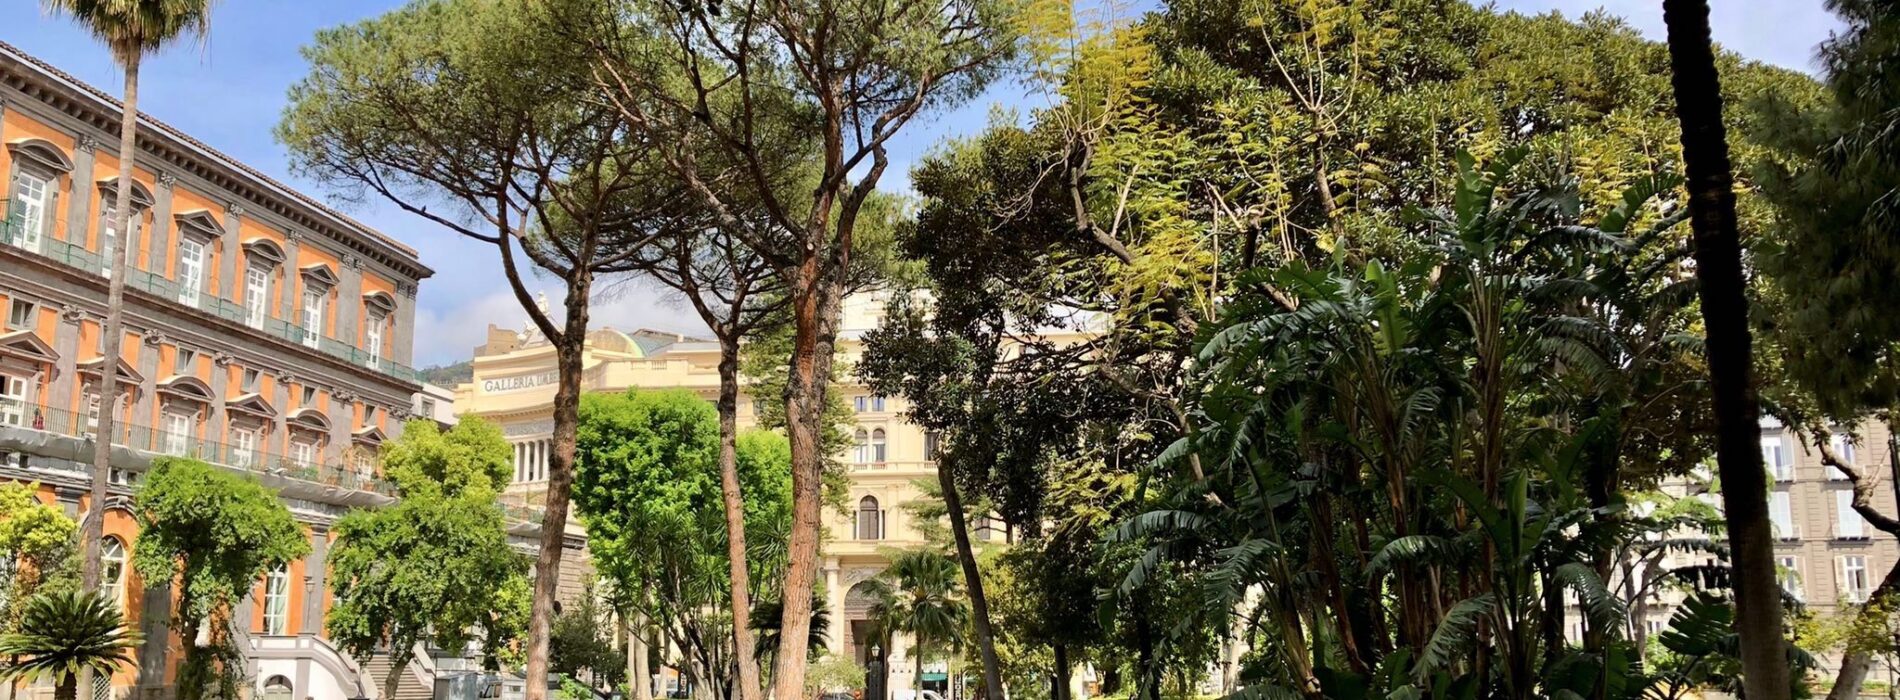 Palazzo Reale di Napoli, i giardini ora si vestono di nuovi colori